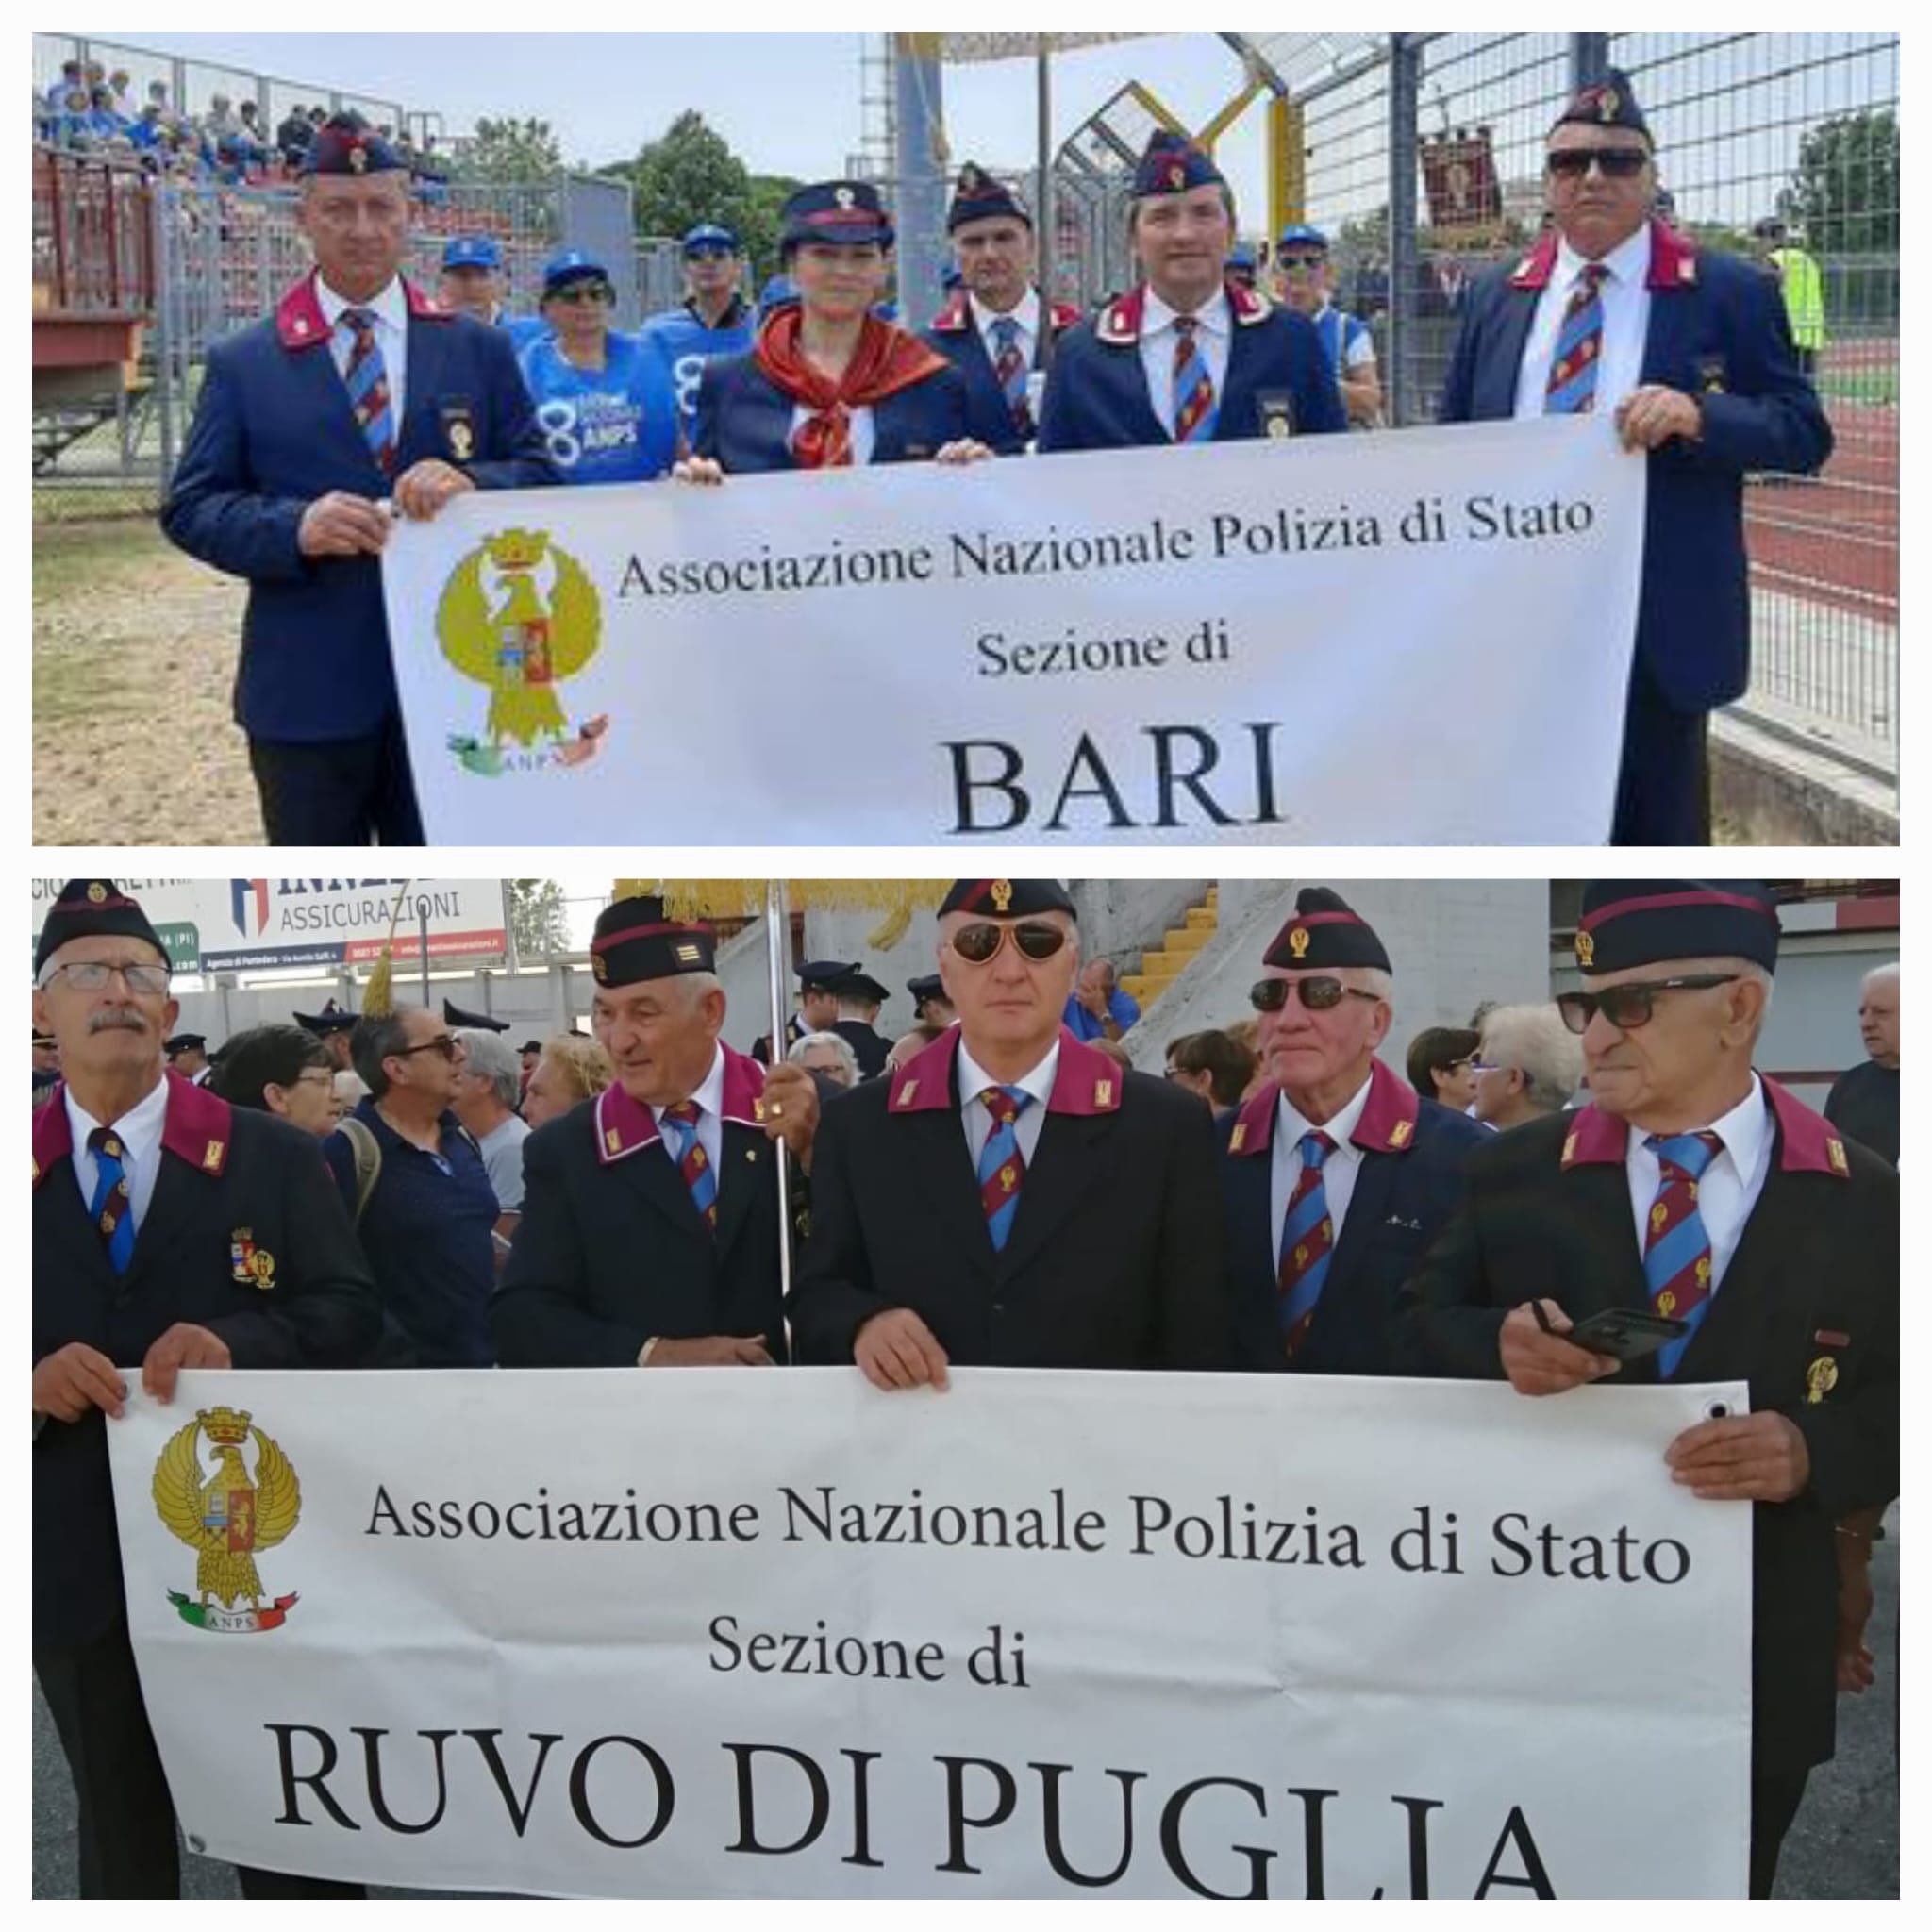 VIII Raduno Nazionale dell’Associazione Nazionale Polizia Di Stato, presenti anche le nostre Sezioni di Bari e Ruvo di Puglia